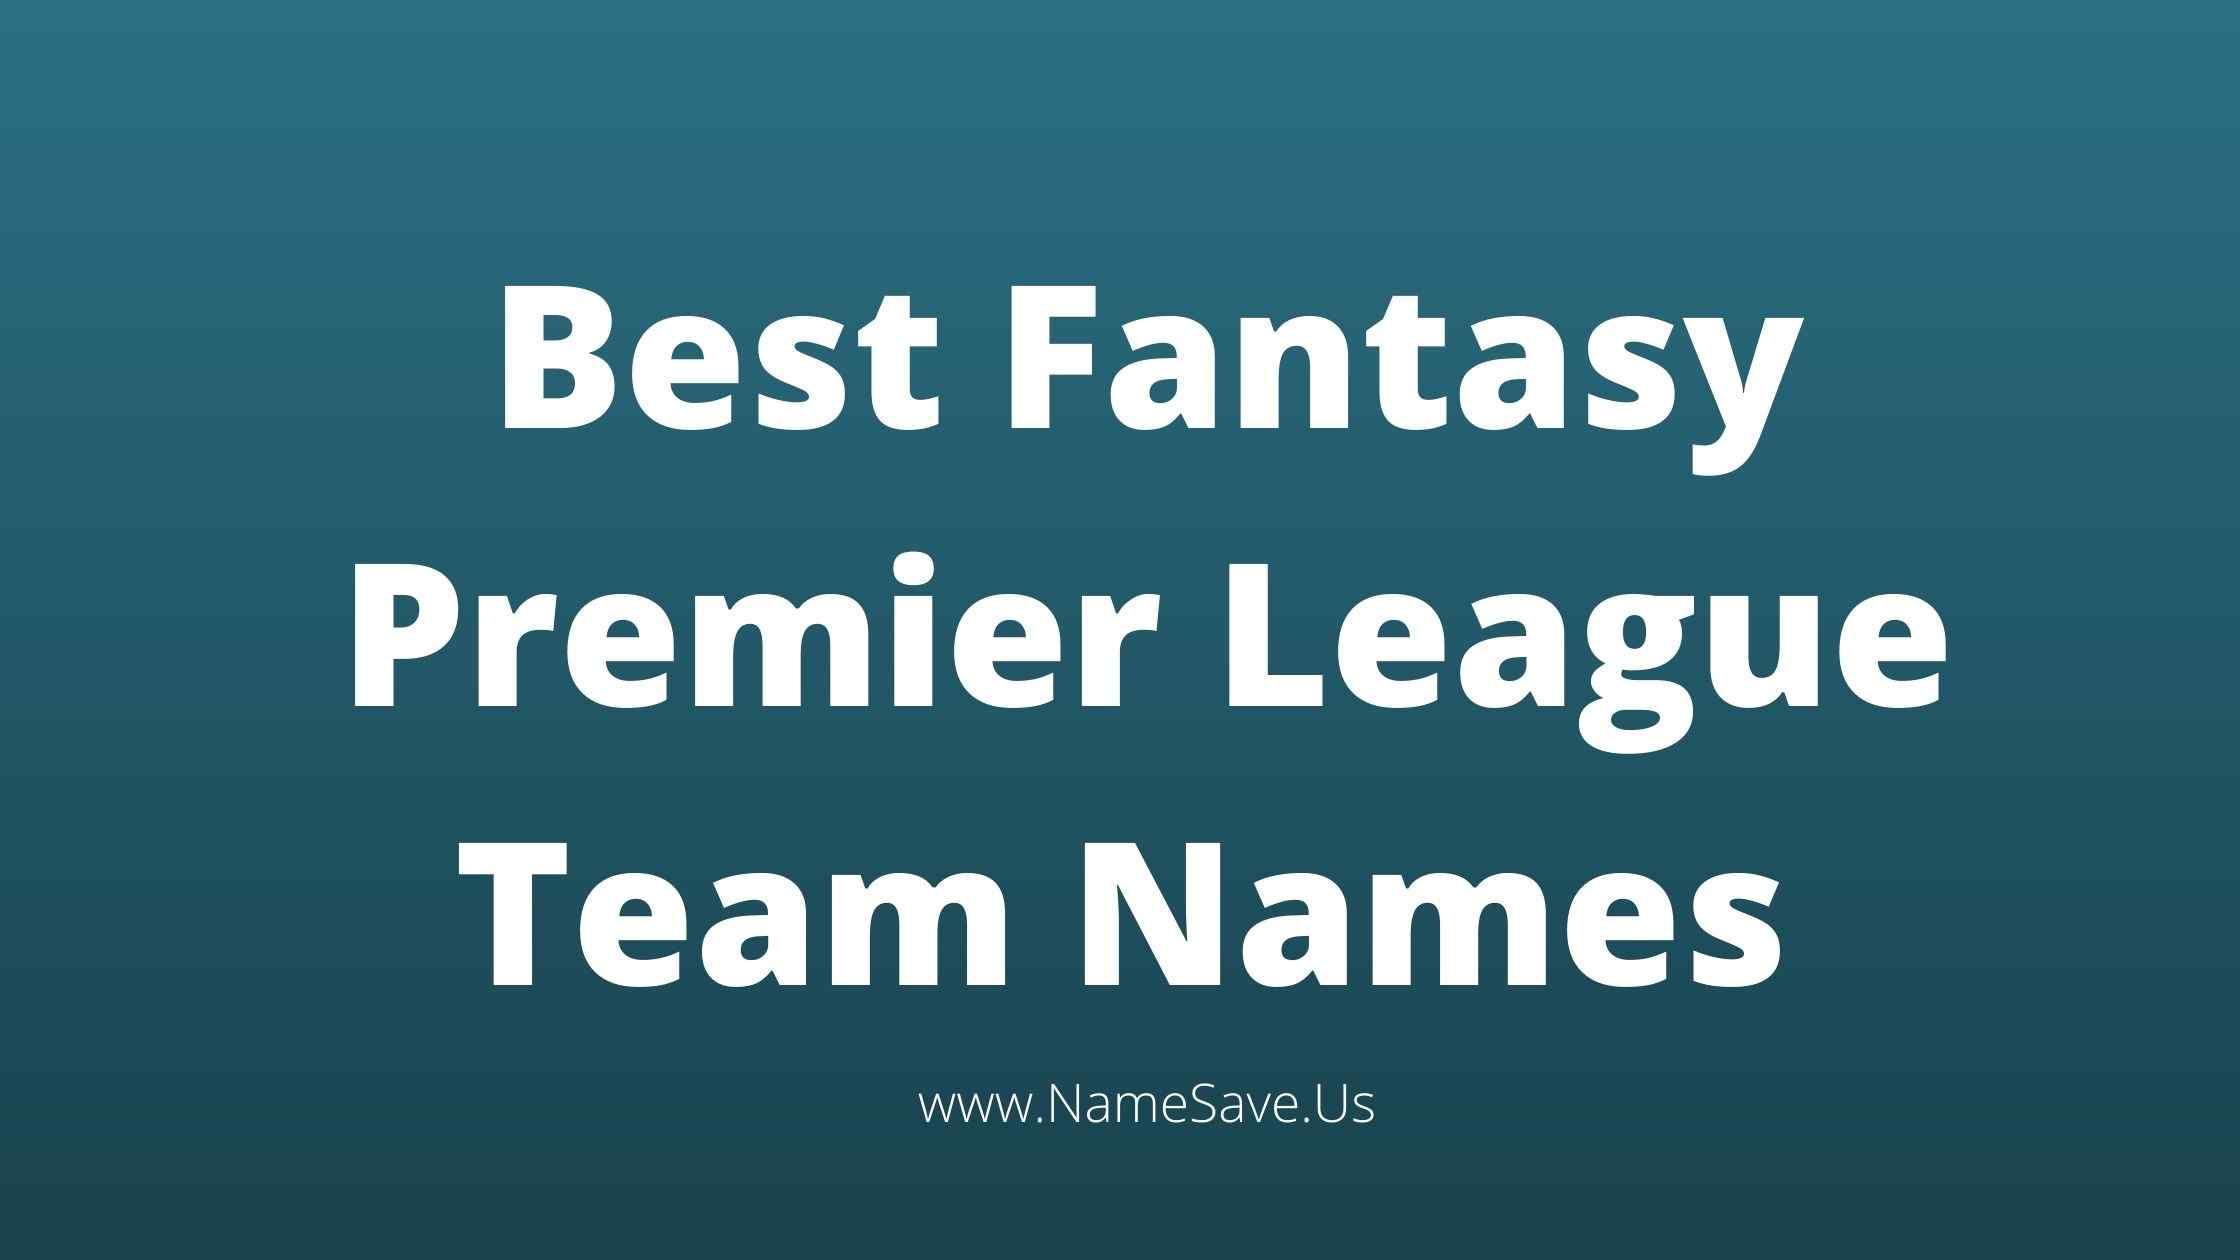 Best Fantasy Premier League Team Names